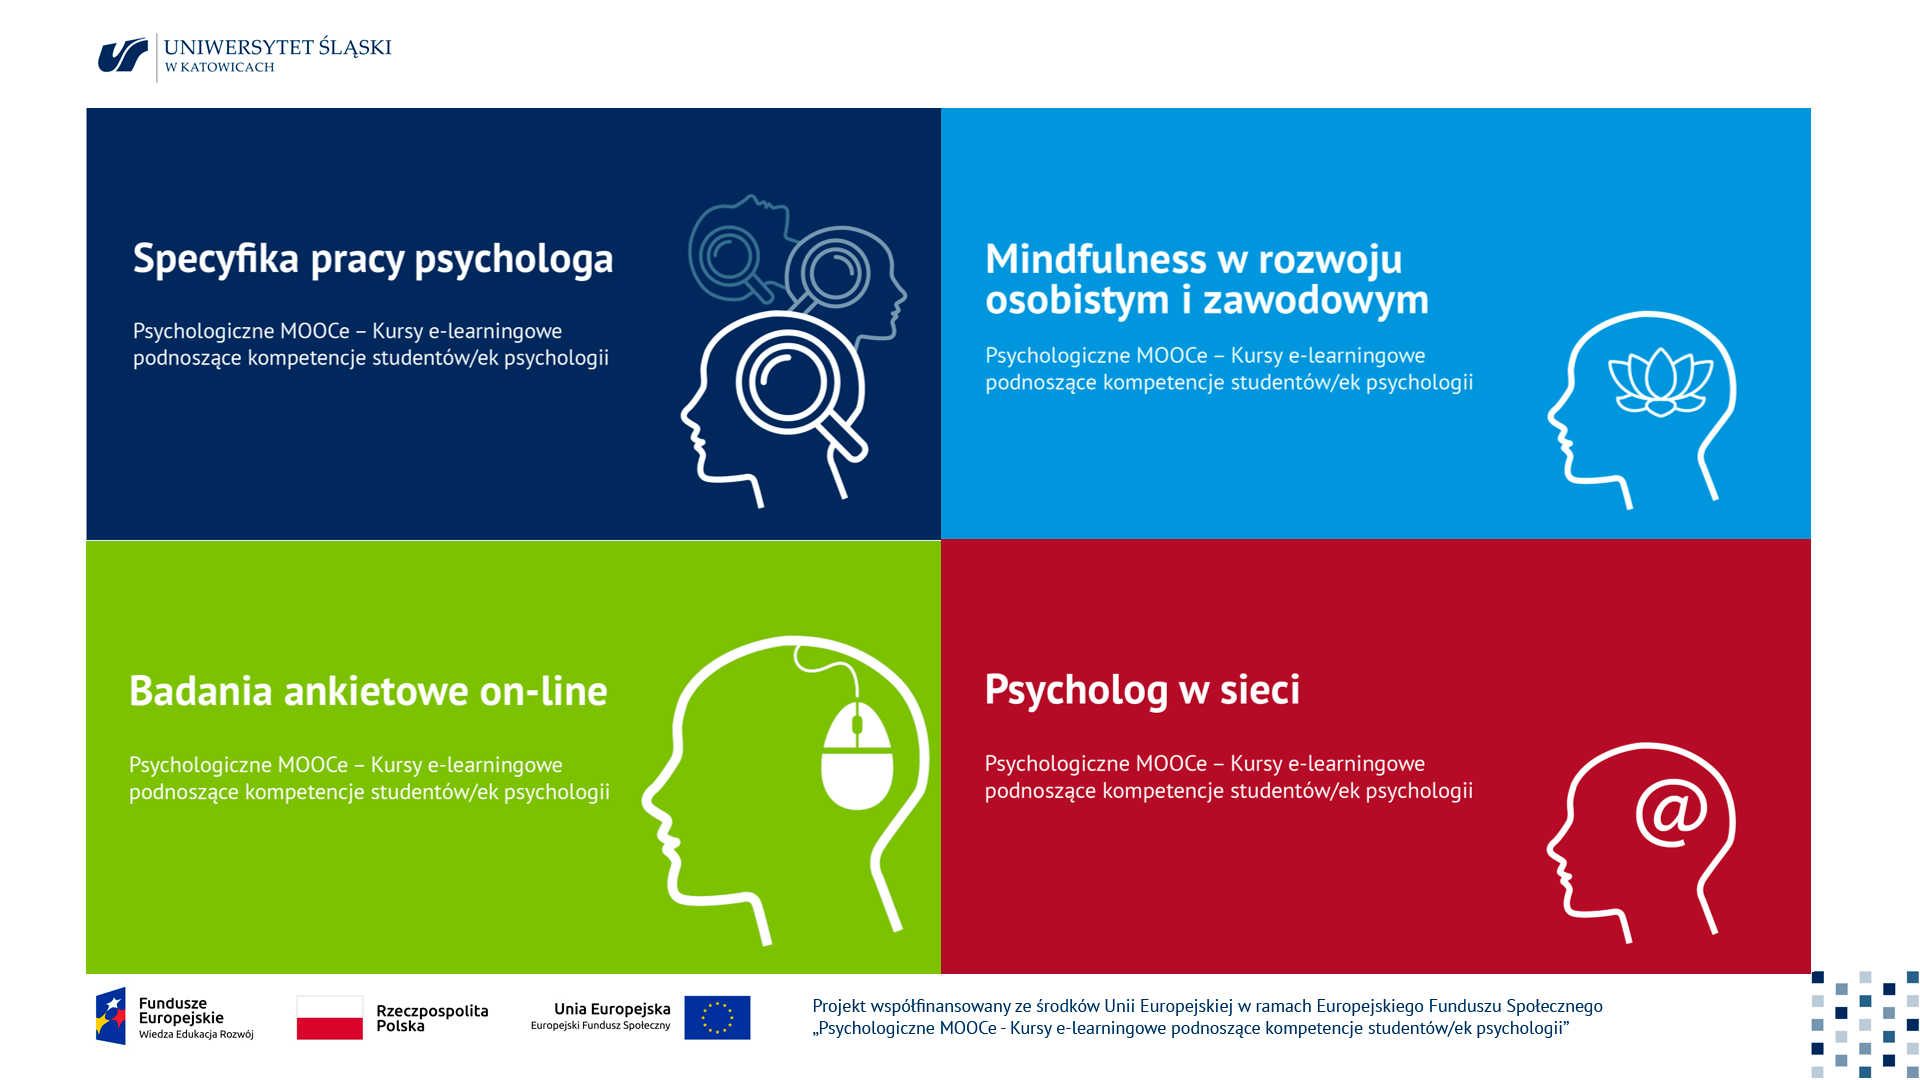 plakat promujacy projekt" Psychologiczne Moce"